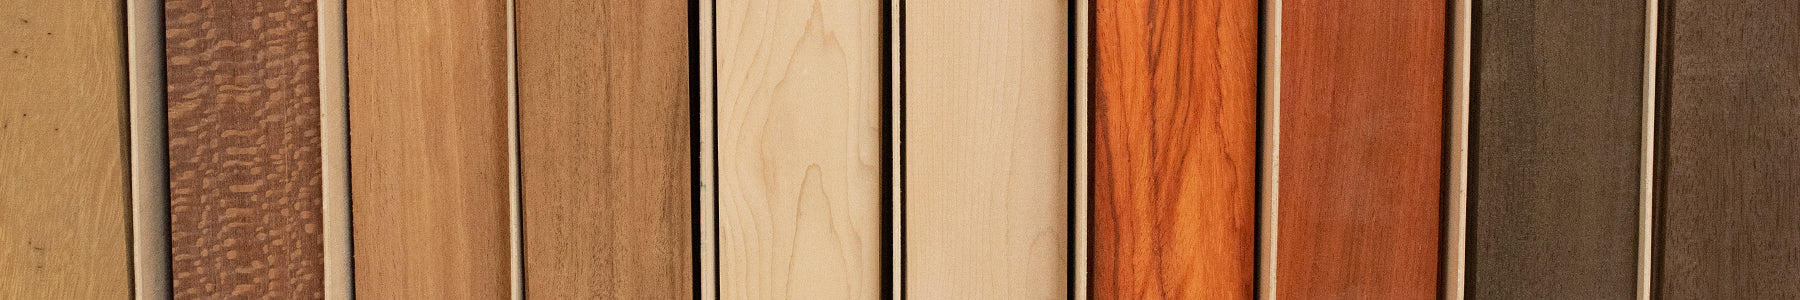 Thin Wood & Lumber